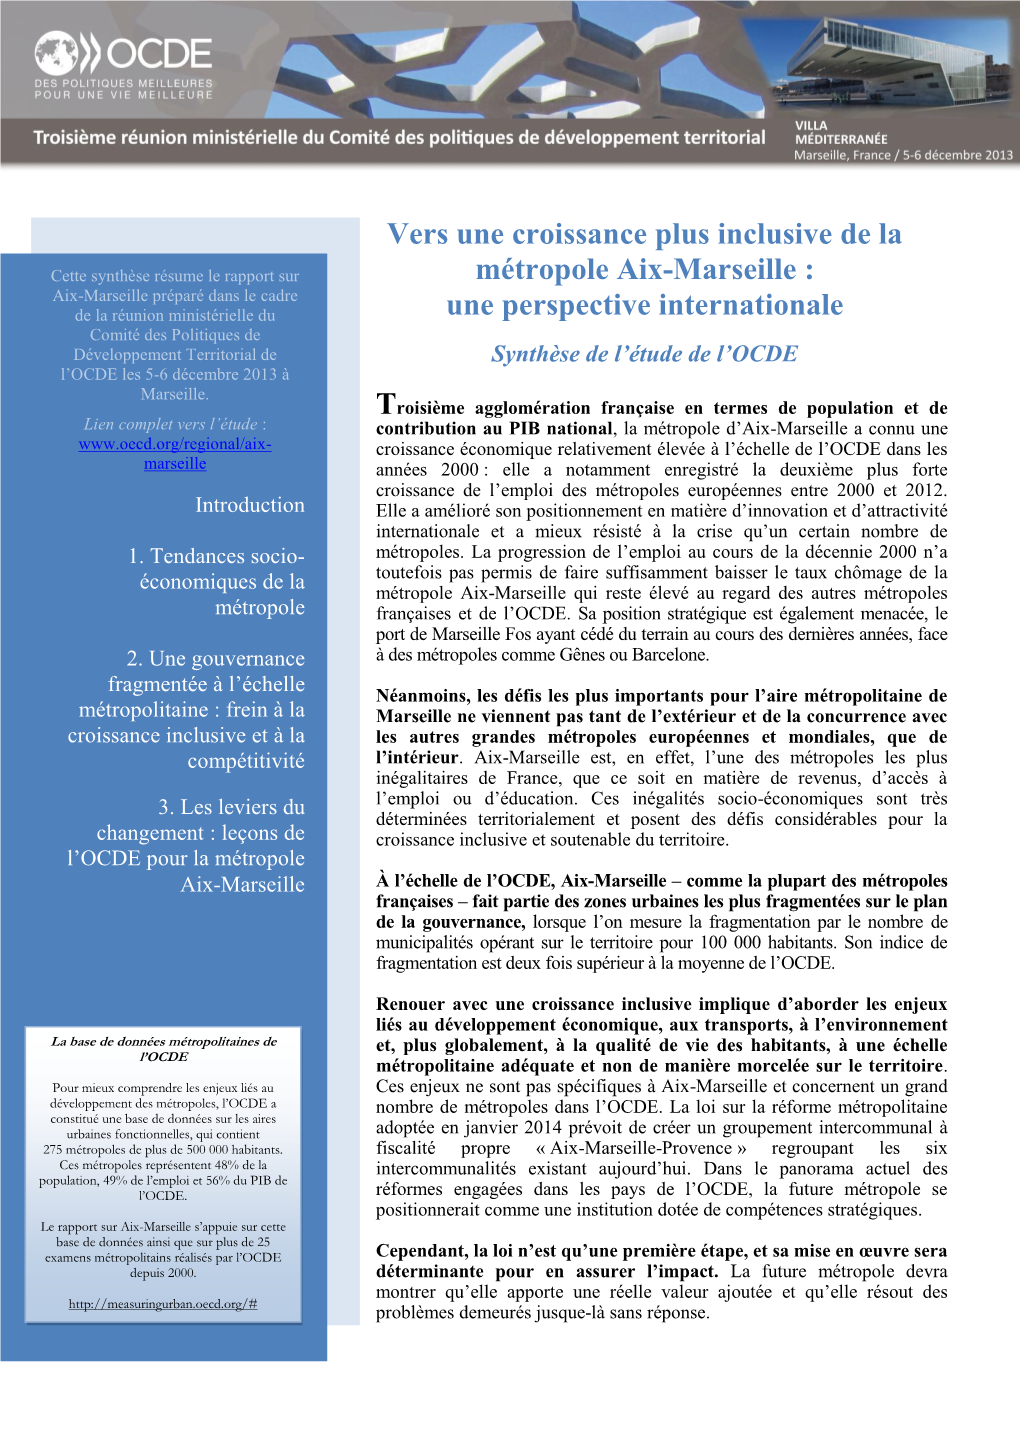 Vers Une Croissance Plus Inclusive De La Métropole Aix-Marseille